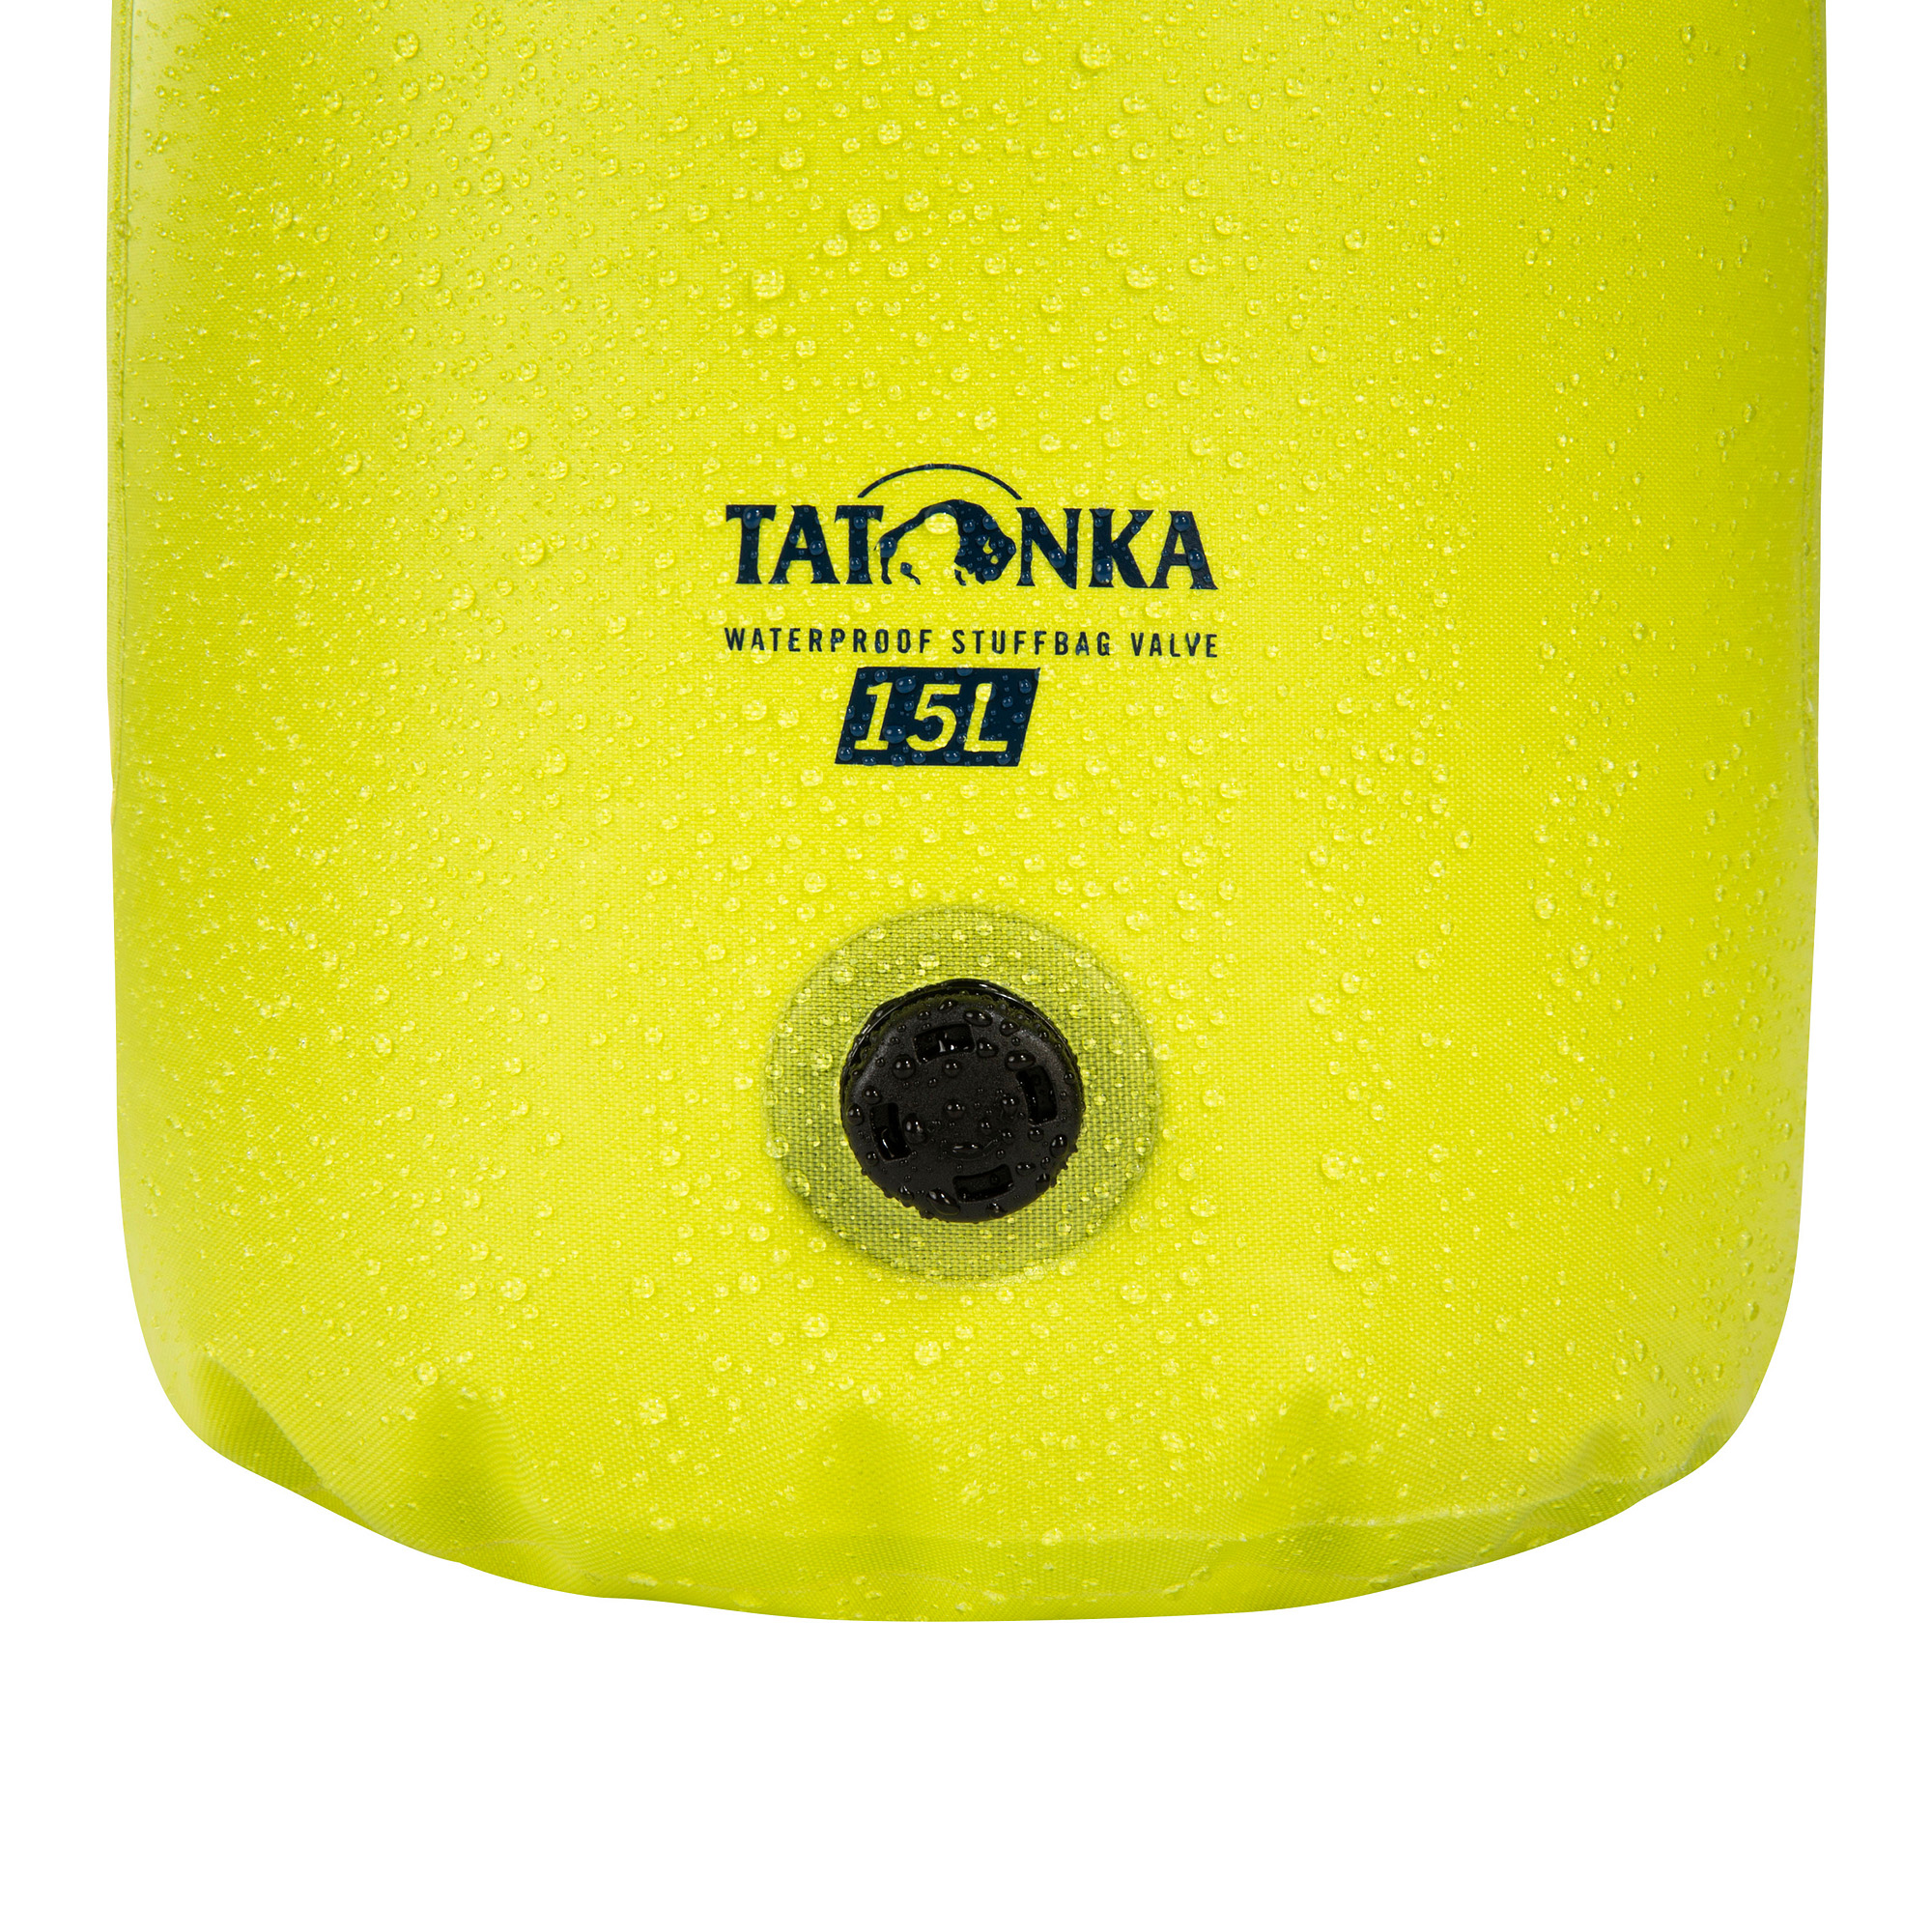 Tatonka WP Stuffbag Valve 15l lime gelb Reisezubehör 4013236393613